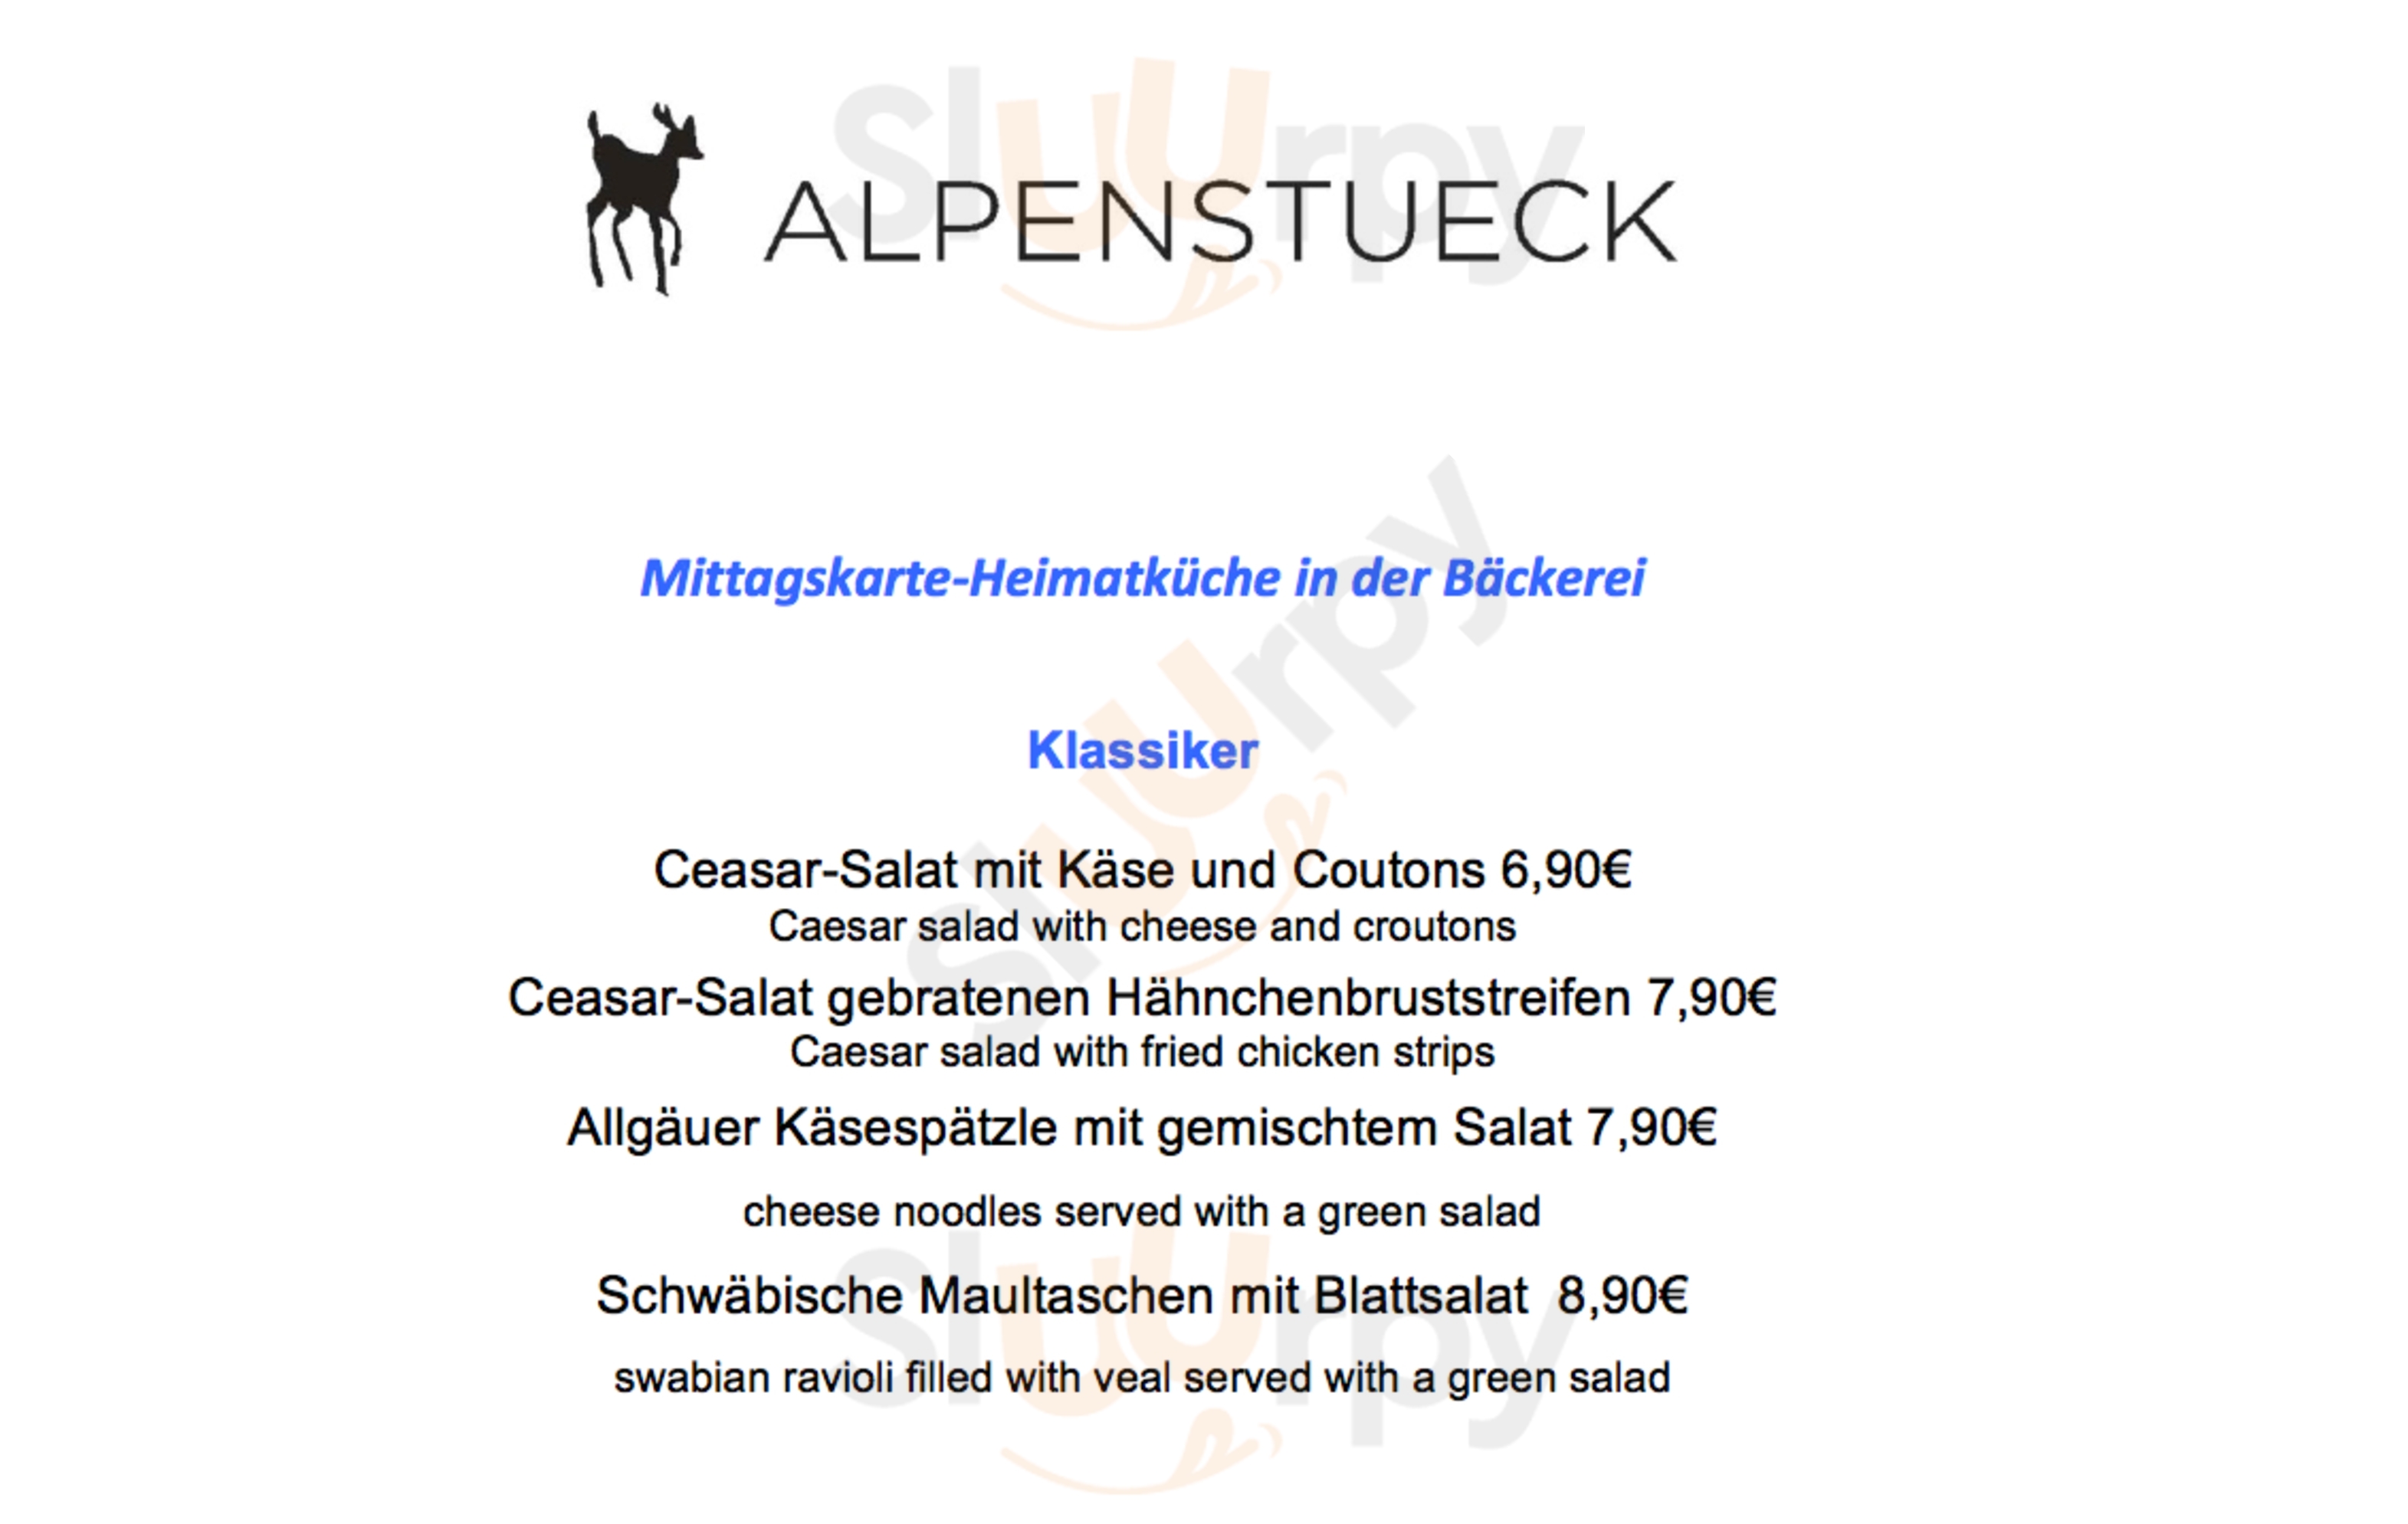 Alpenstück Bäckerei Berlin Menu - 1